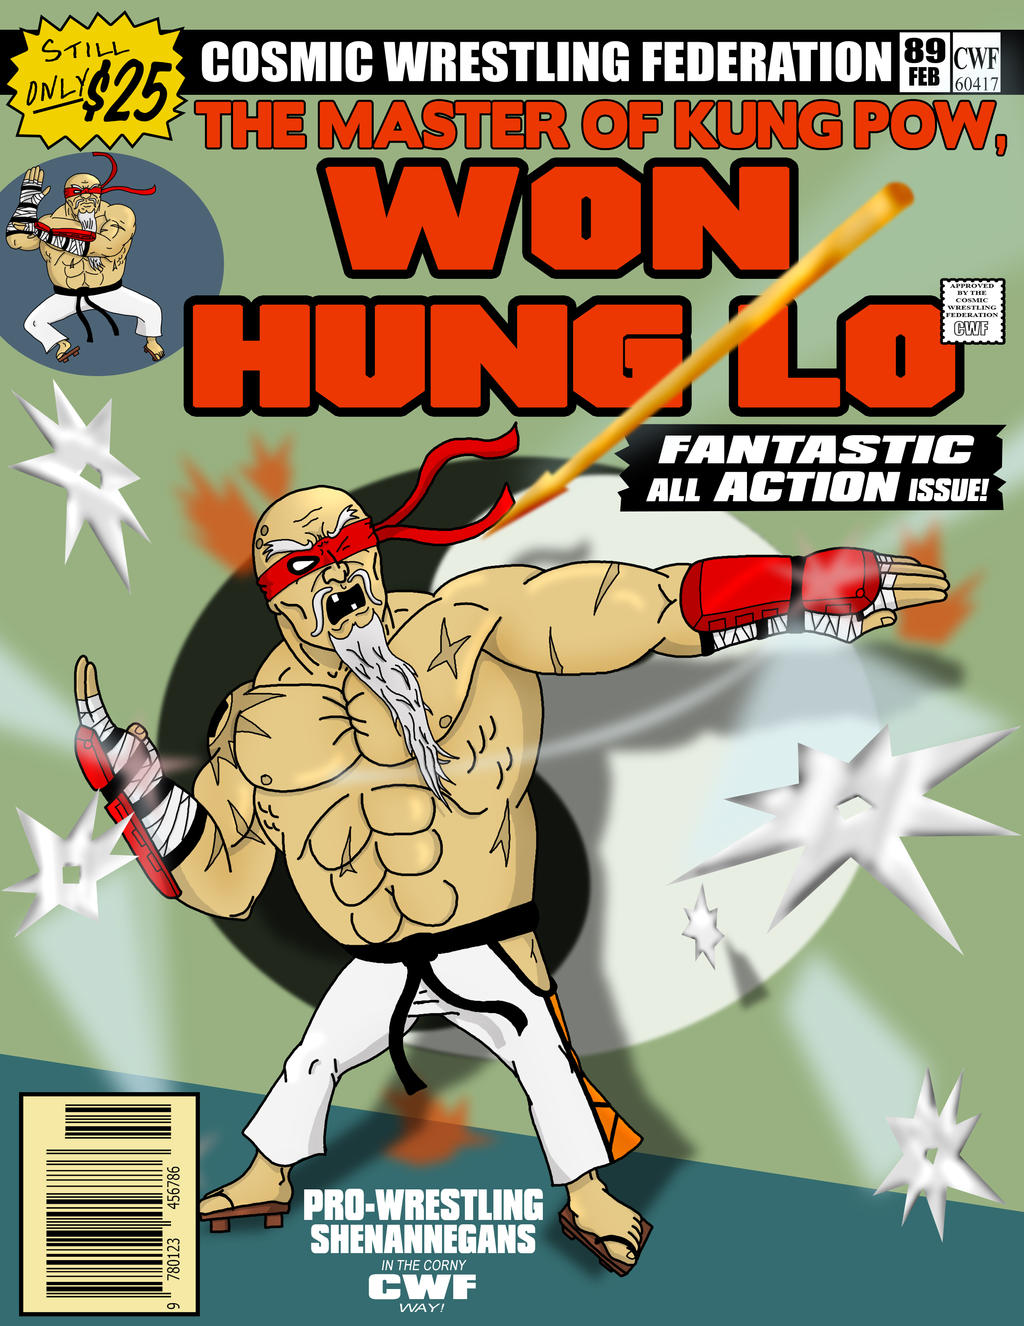 Hung lo won Urban Dictionary: